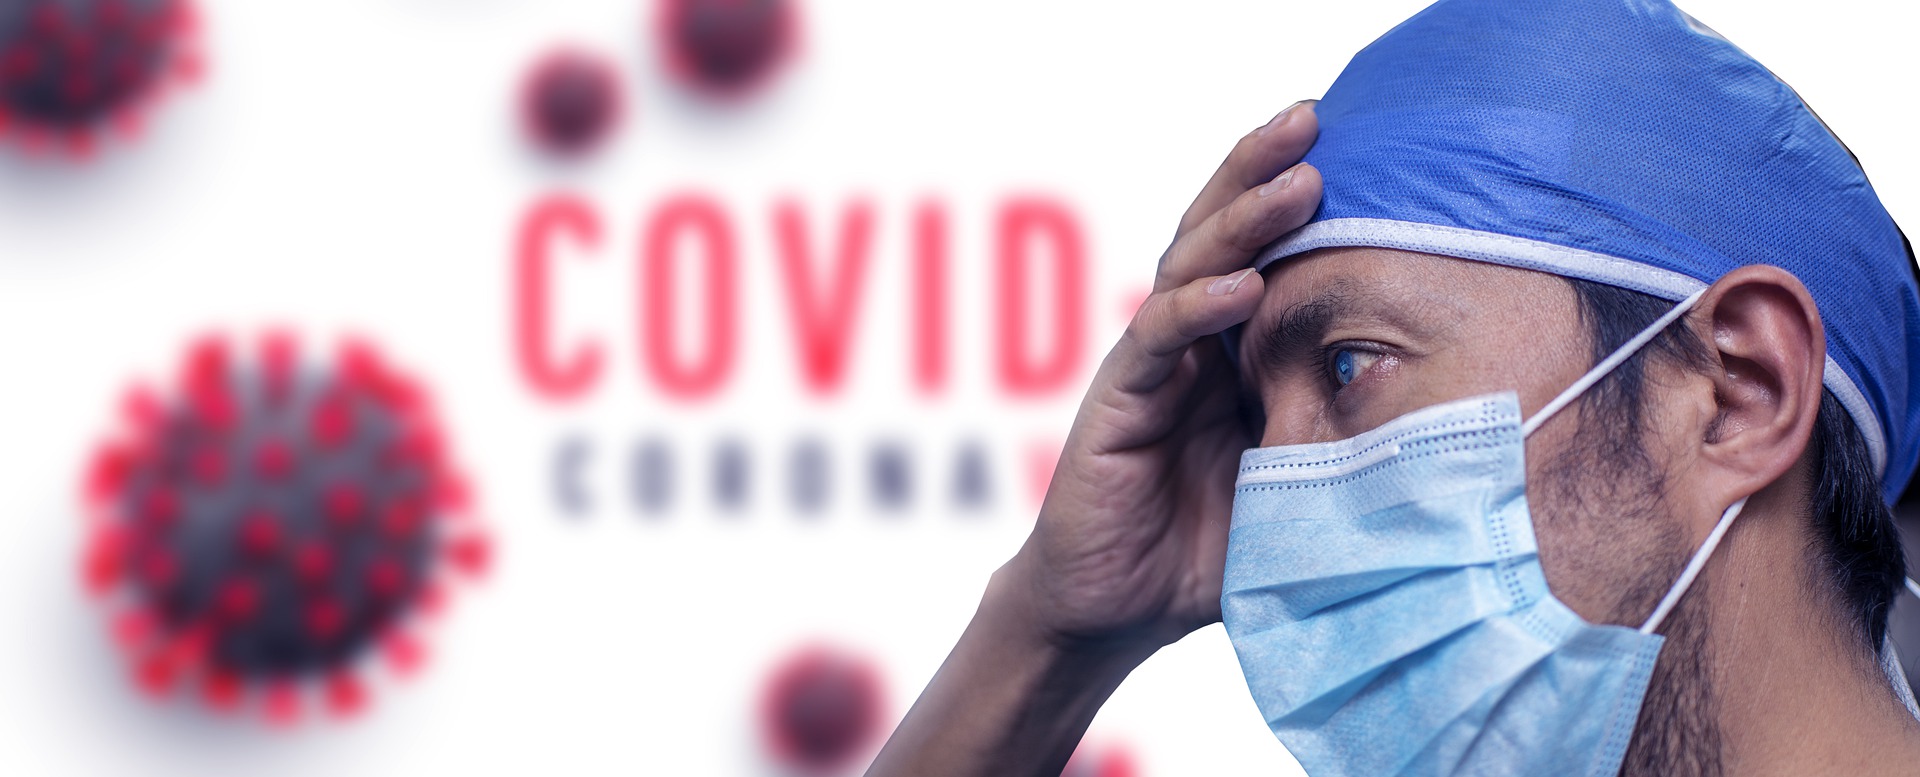 28 случаев заражения COVID-19 зафиксировали в Смоленской области